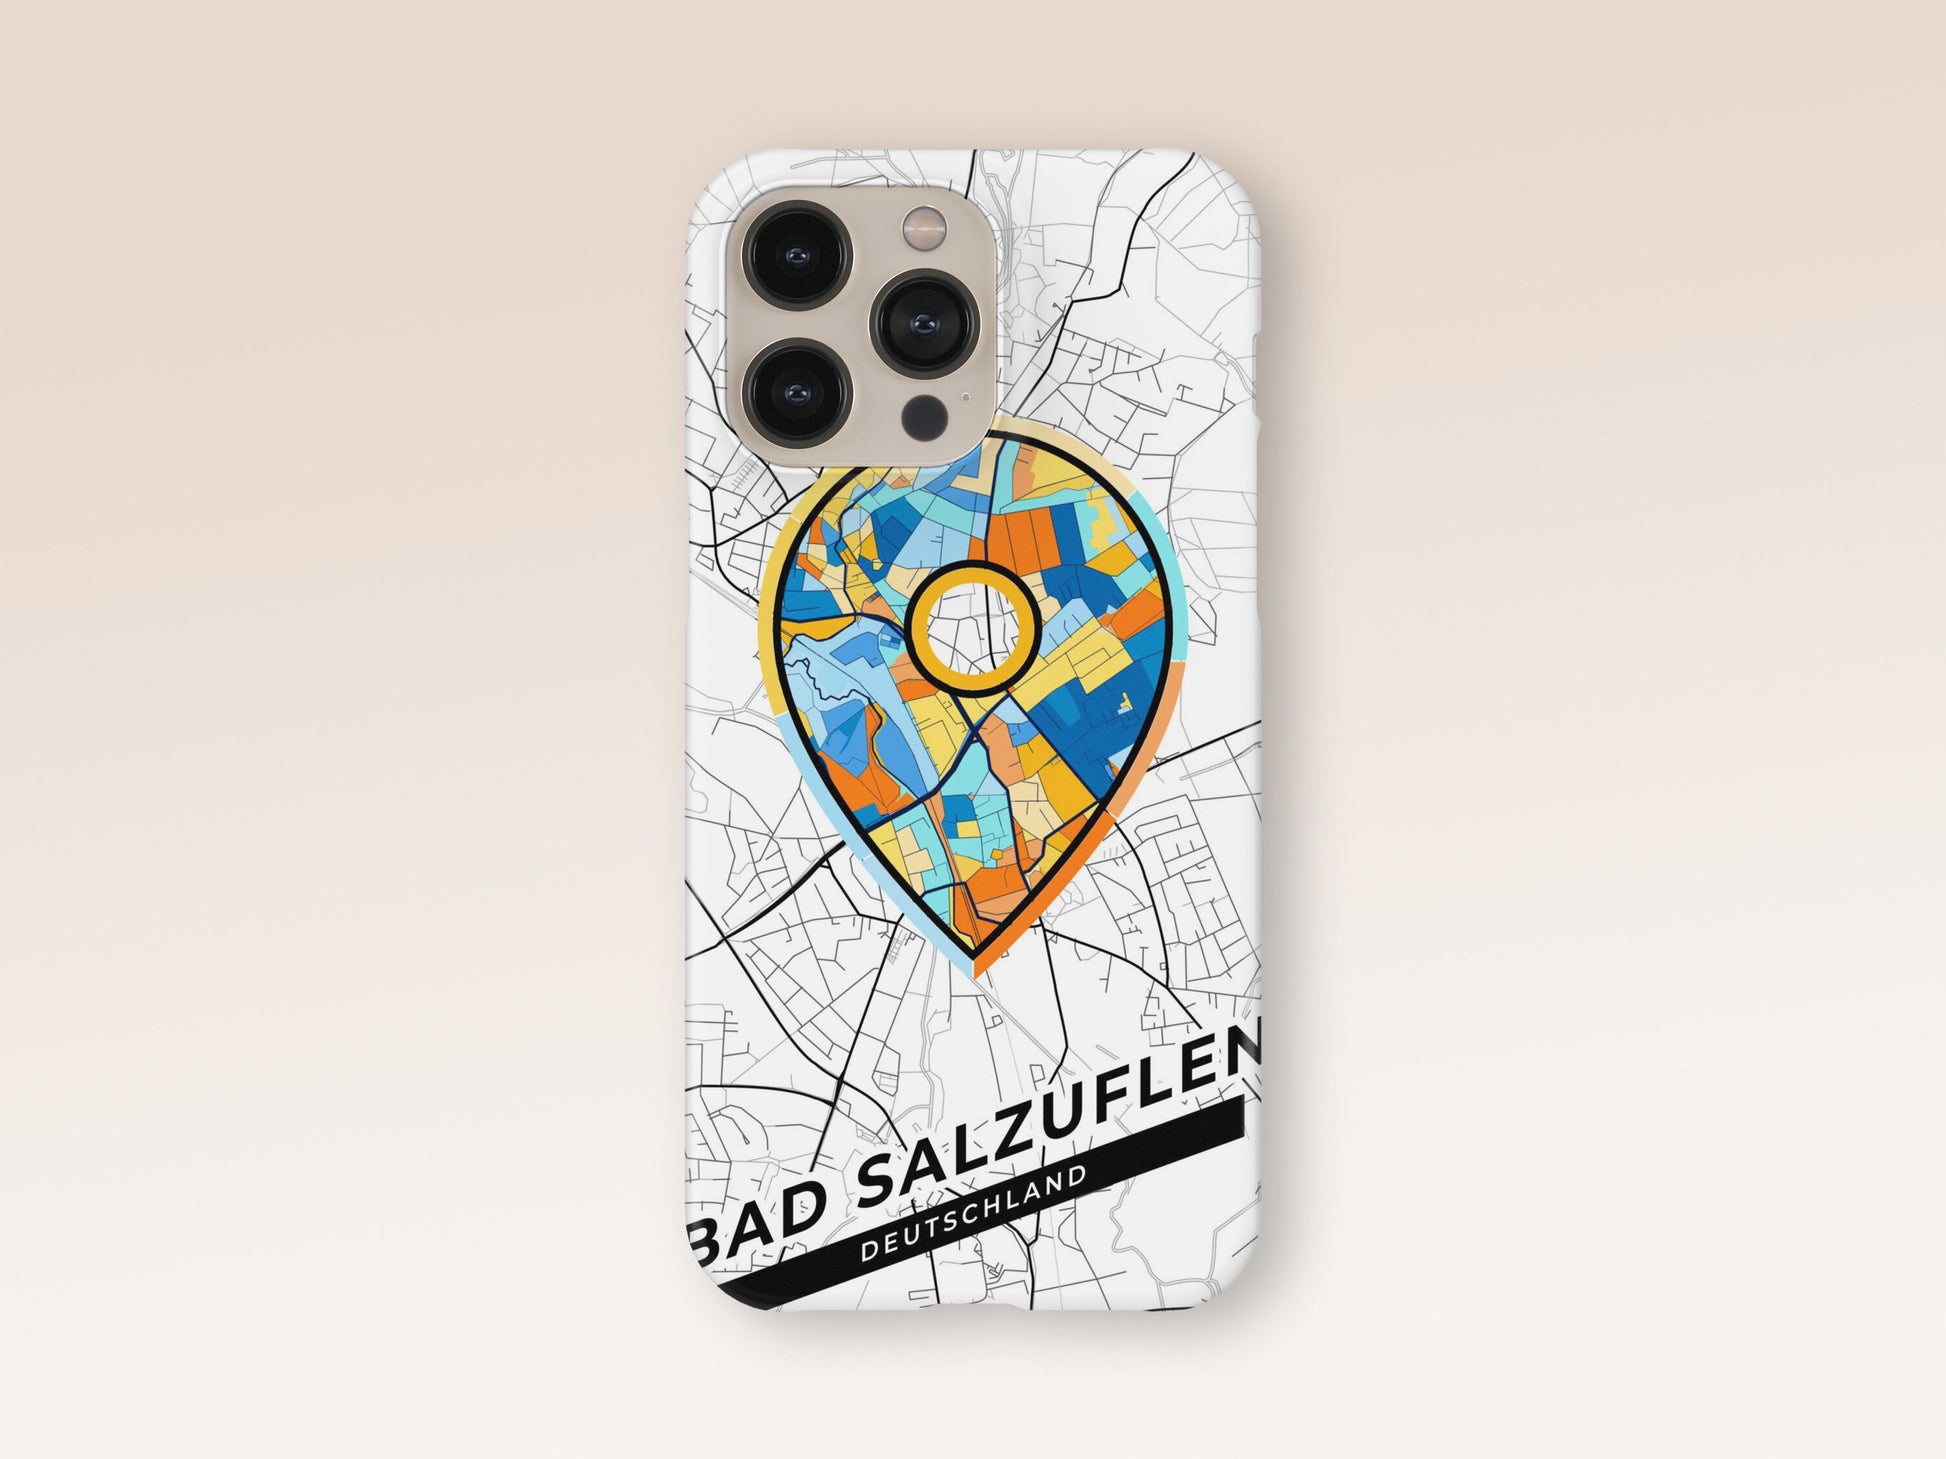 Bad Salzuflen Deutschland slim phone case with colorful icon. Birthday, wedding or housewarming gift. Couple match cases. 1